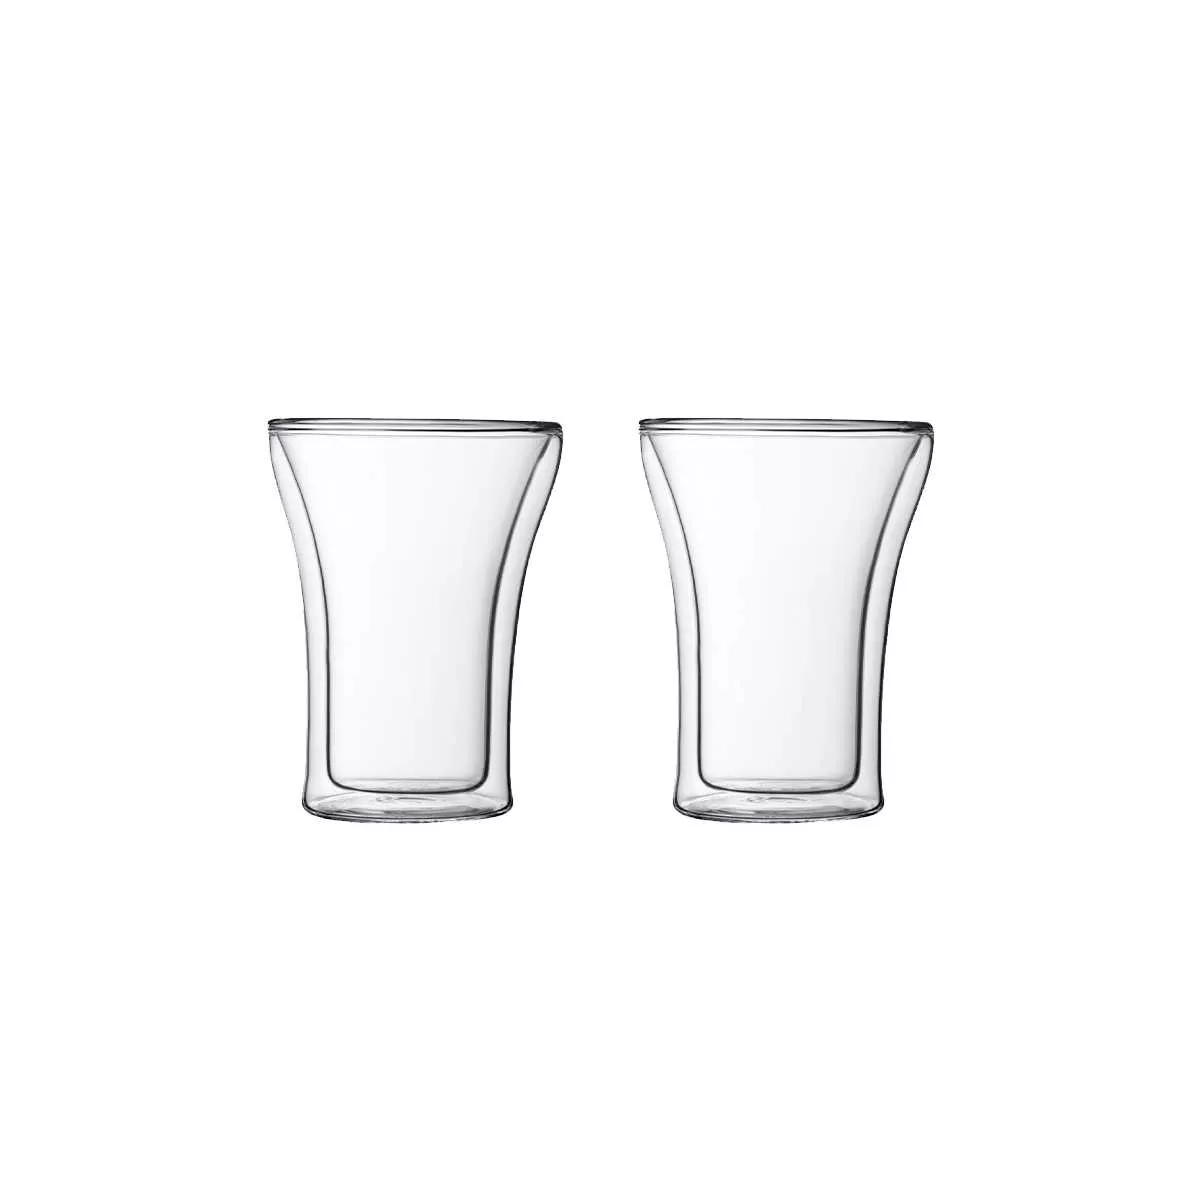 Набор термо-стаканов Bodum Assam, объем 0,25 л, 2 шт  (4556-10) - Фото nav 1